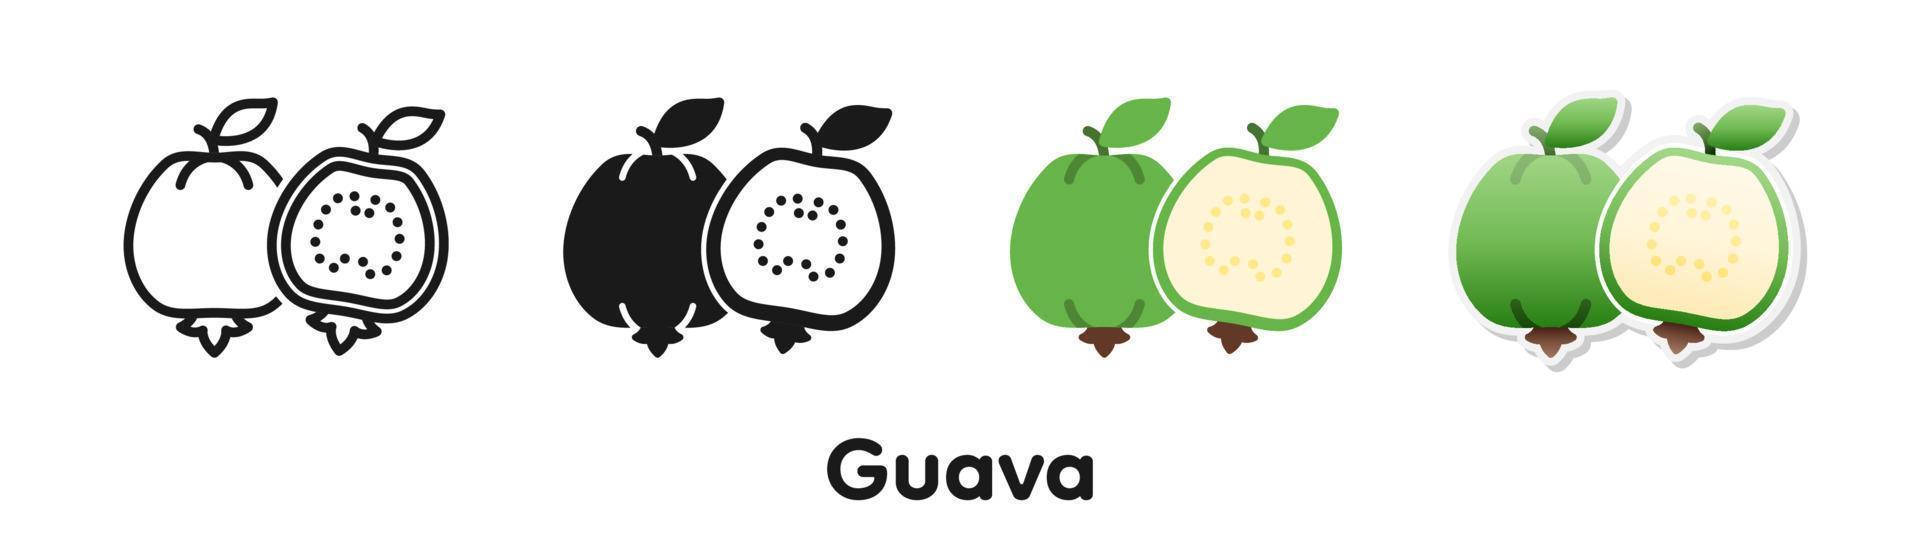 vektor ikonuppsättning av guava.